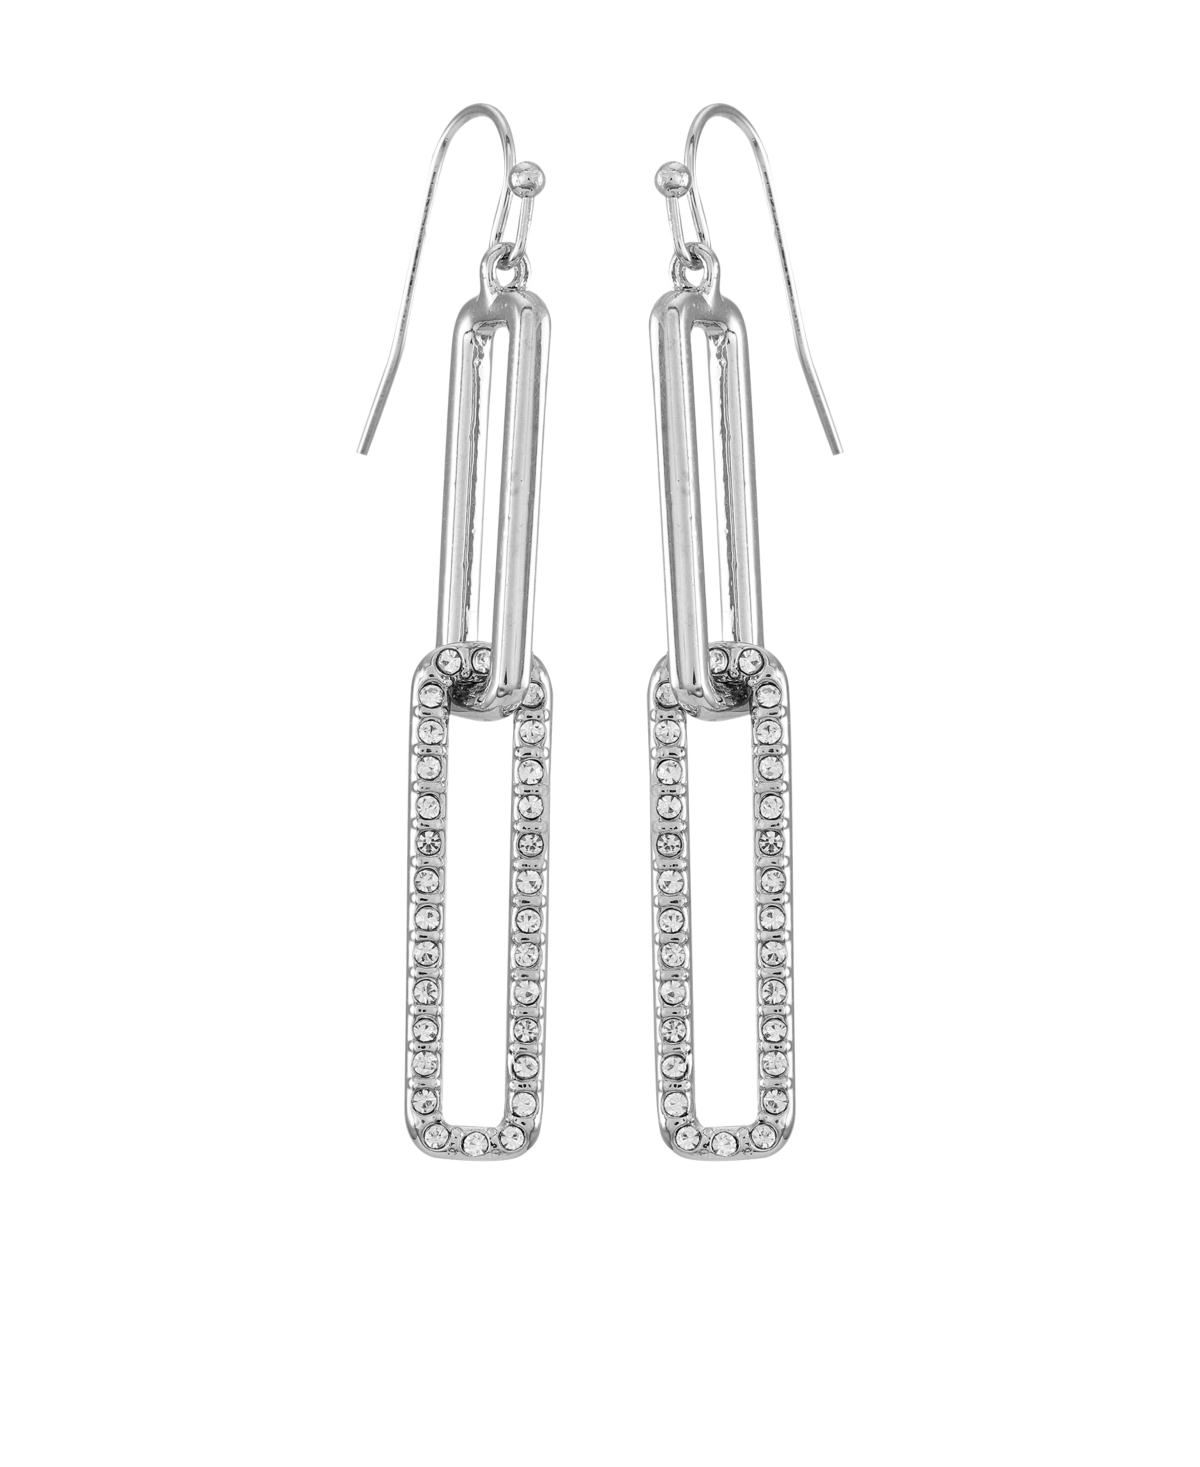 Silver-Tone Glass Stone Linear Link Drop Earrings - Silver